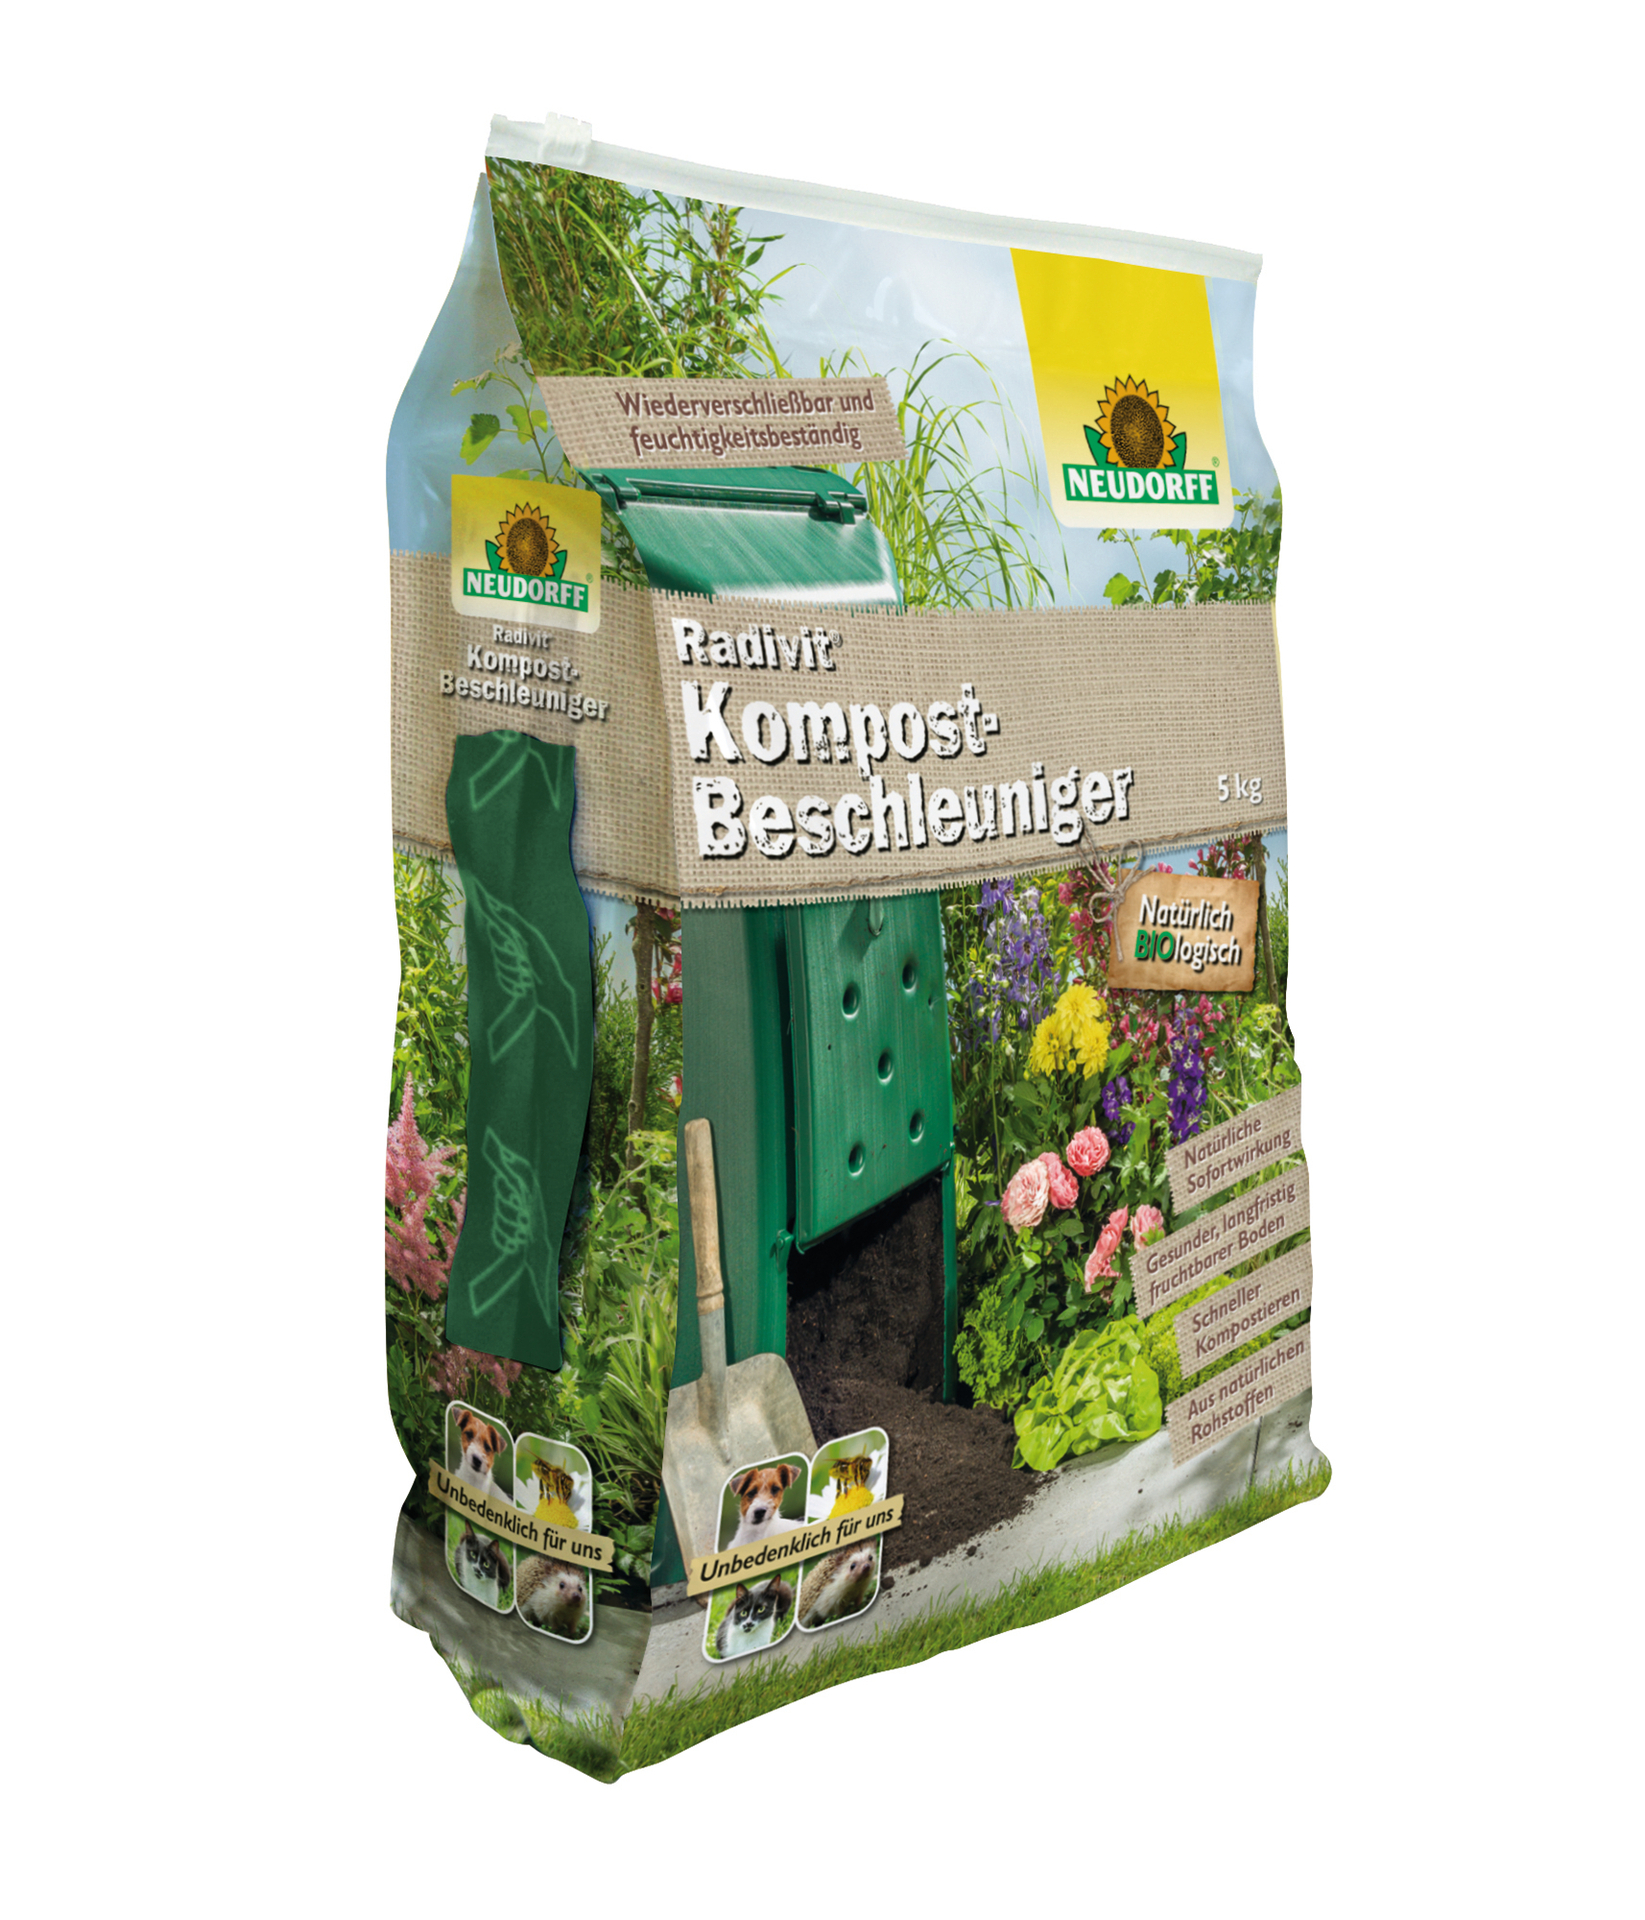 Radivit Kompost-Beschleuniger